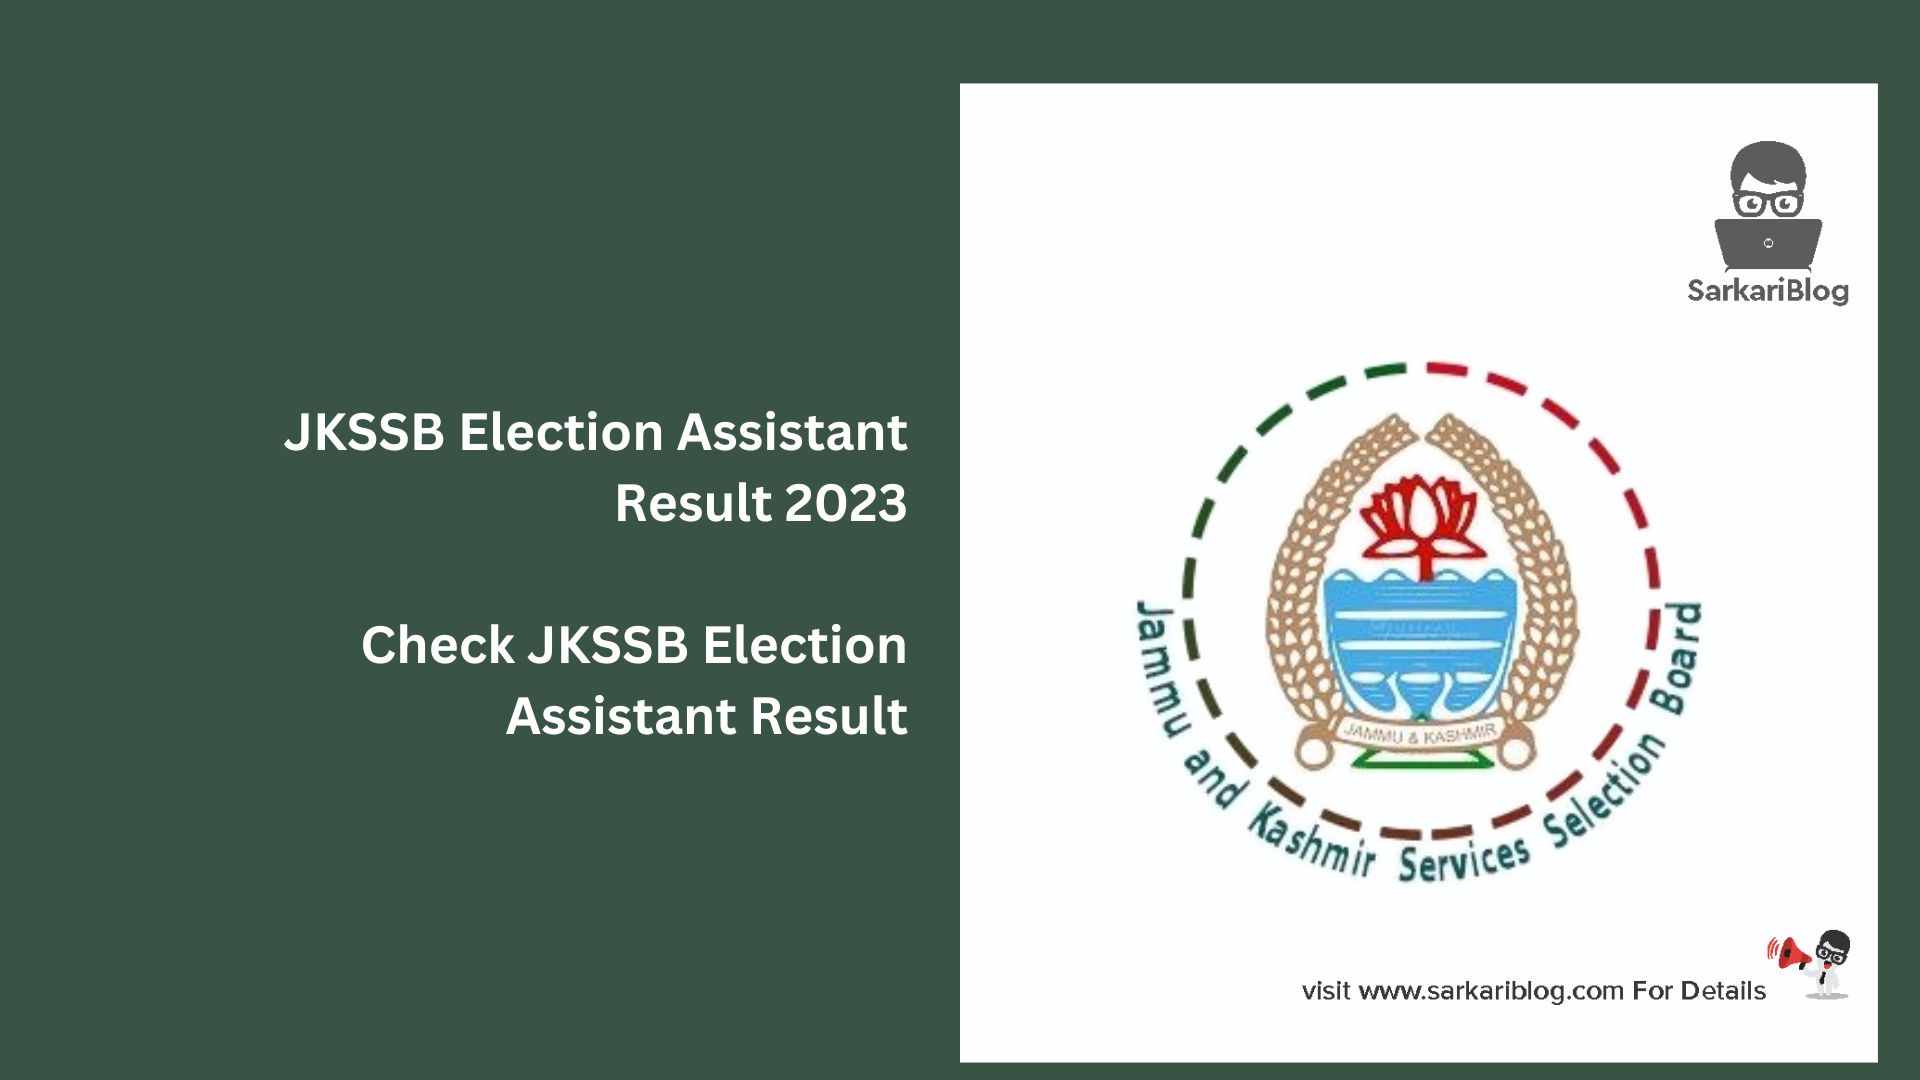 JKSSB Election Assistant Result 2023